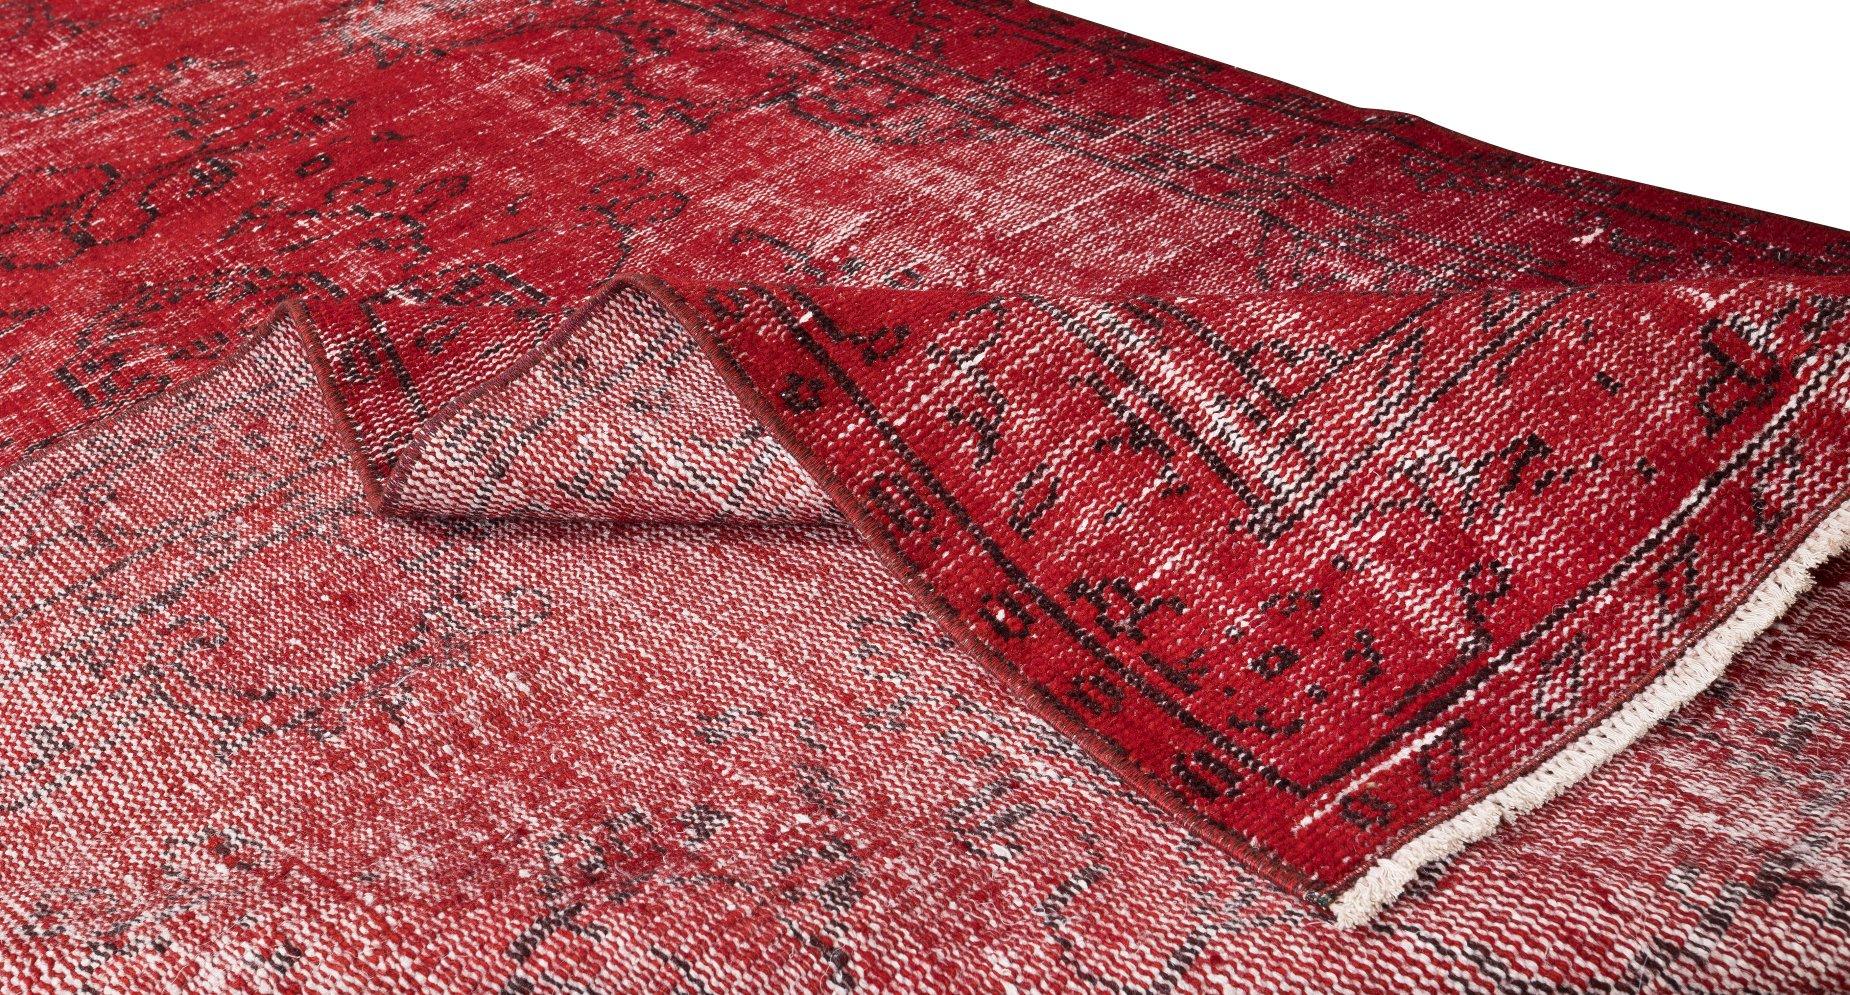 Turc 5x8.6 Ft Handmade 1960s Turkish Rug Re-Dyed in Red, Idéal pour les intérieurs Modernes en vente